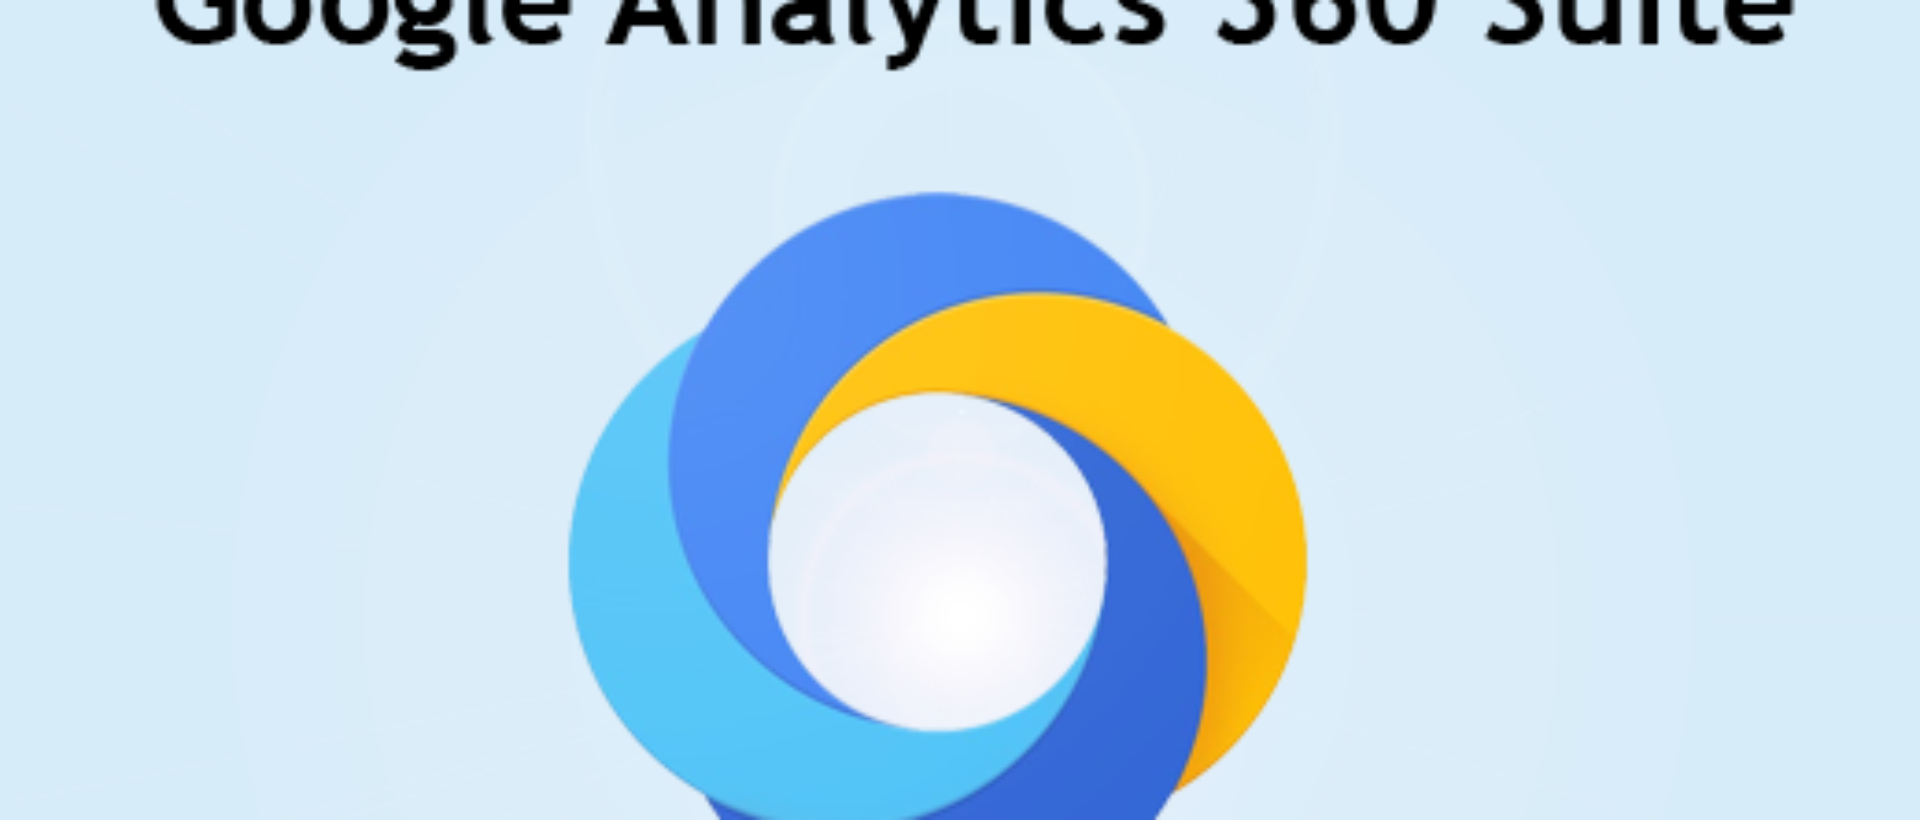 Übersicht Produkte und Funktionen Google Analytics 360 Suite